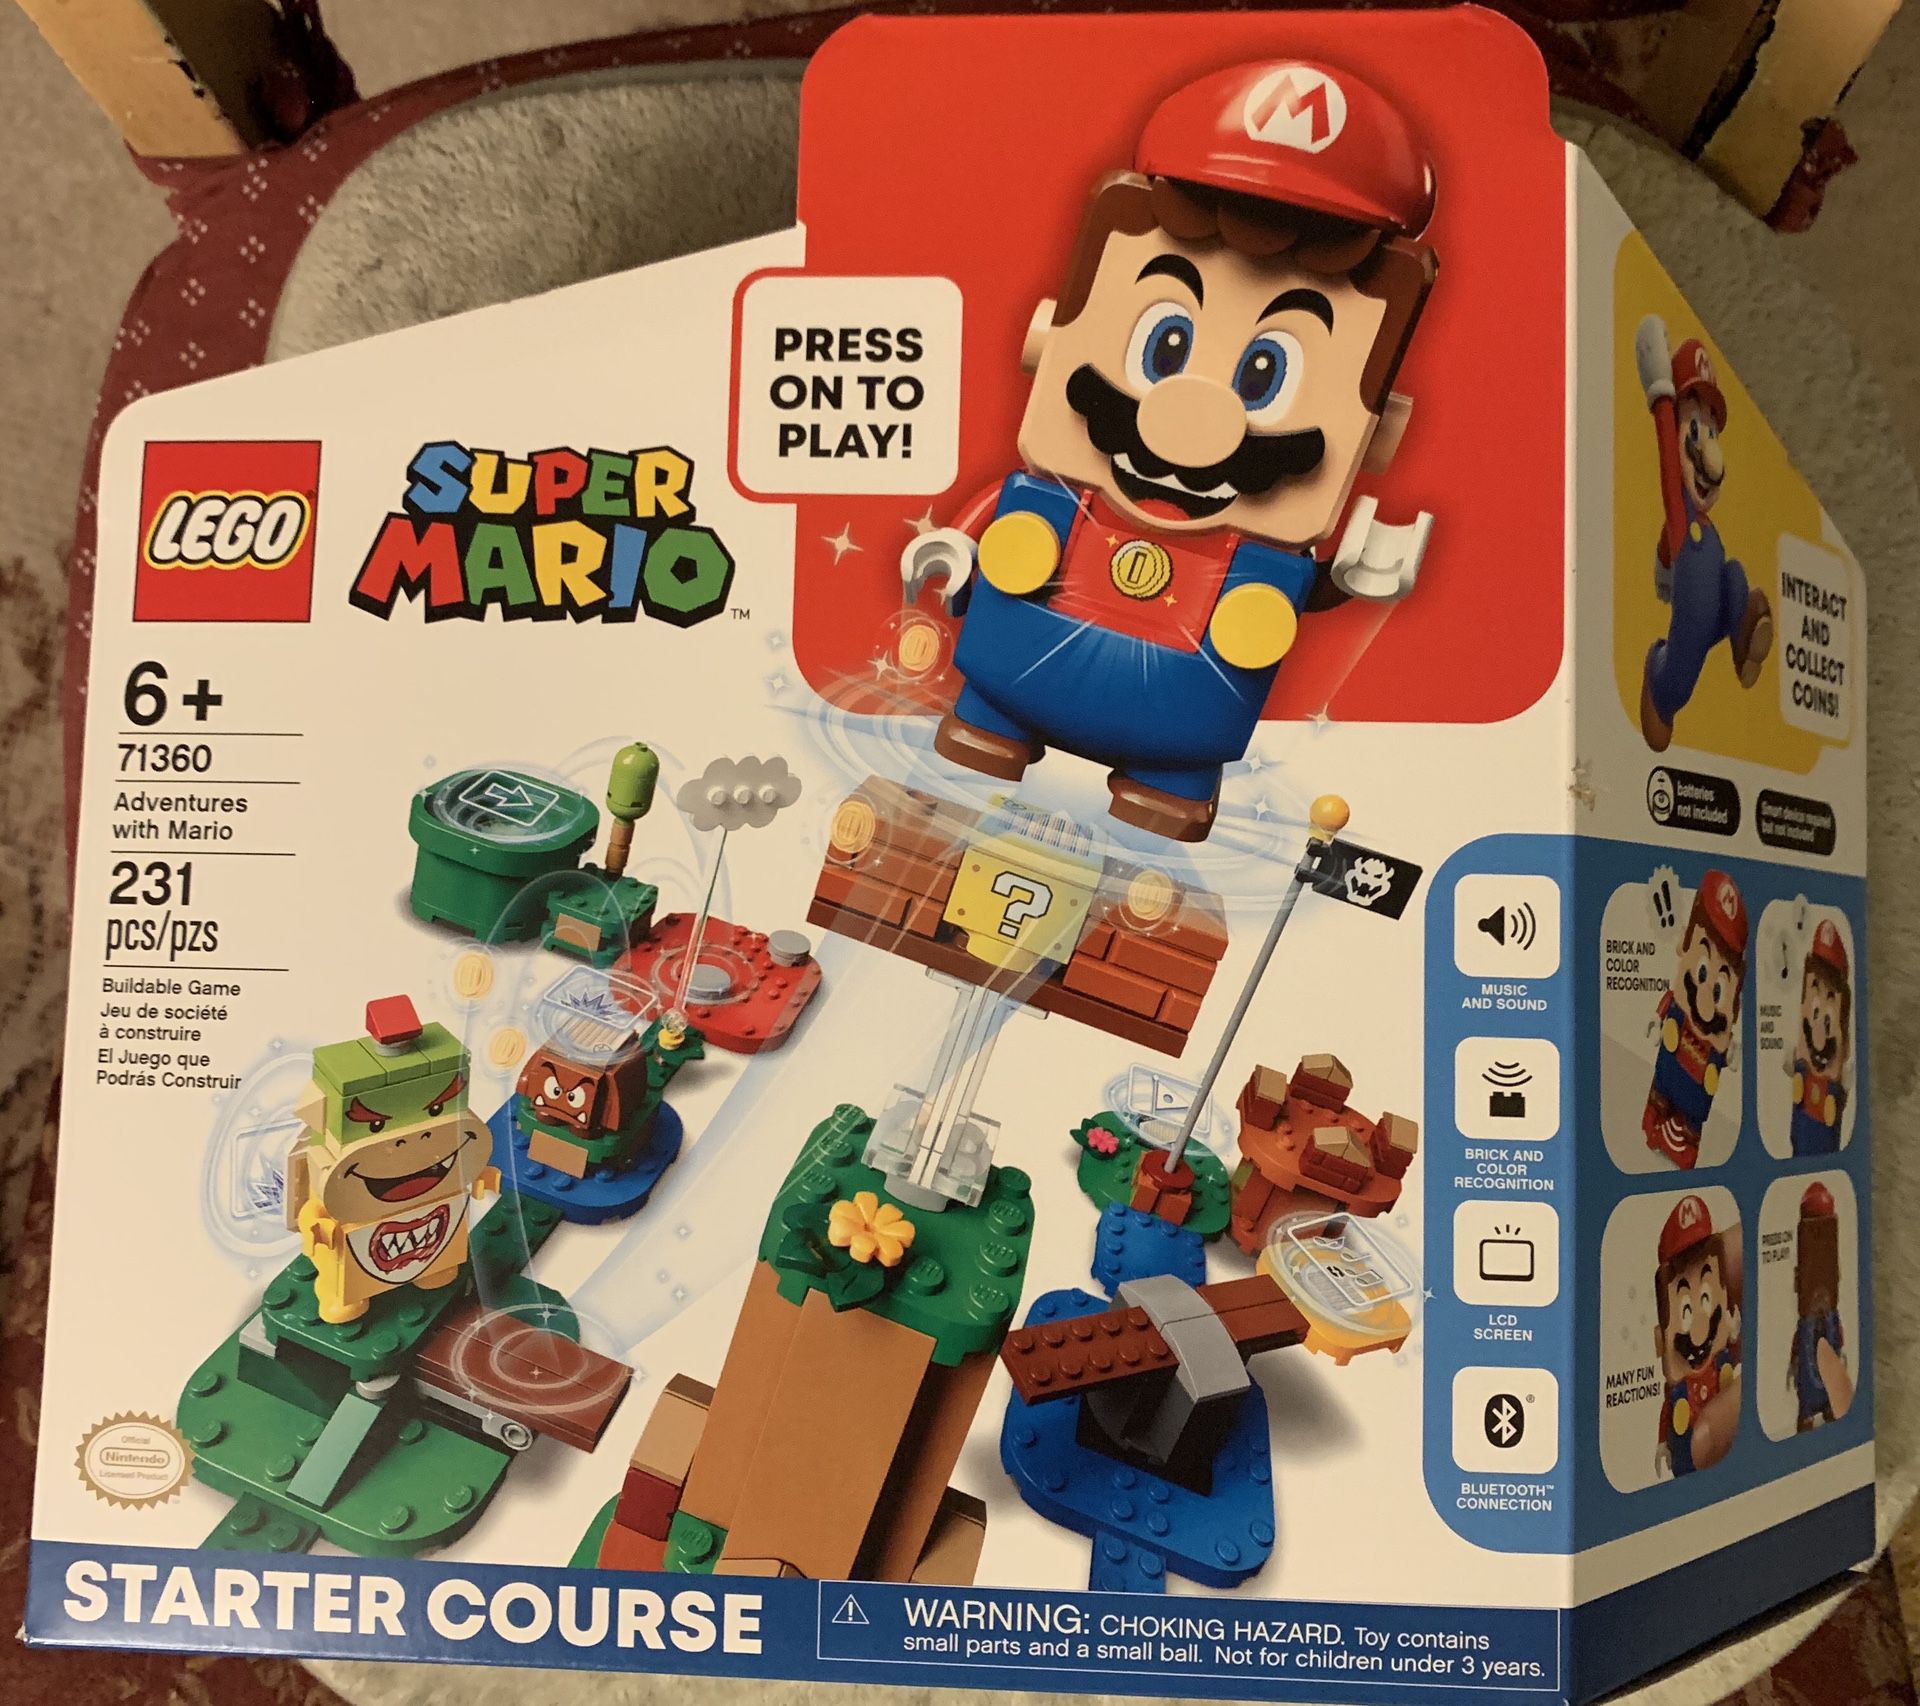 Super Mario LEGO set/starter course